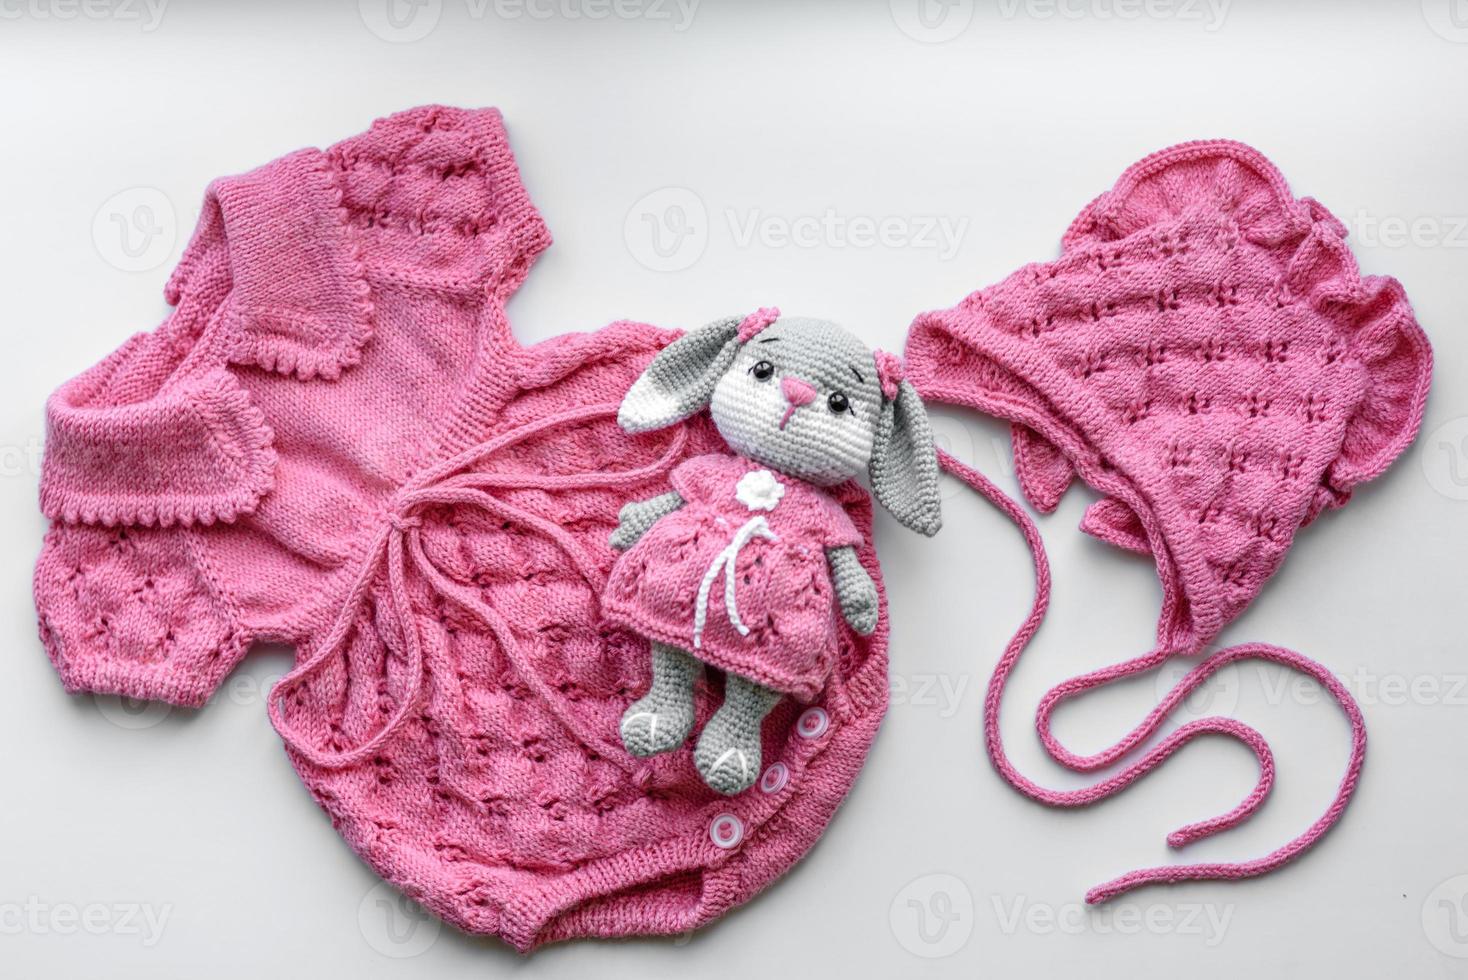 tranquilo Cayo robot hermosa ropa tejida para bebés y un juguete para un bebé recién nacido  11109960 Foto de stock en Vecteezy